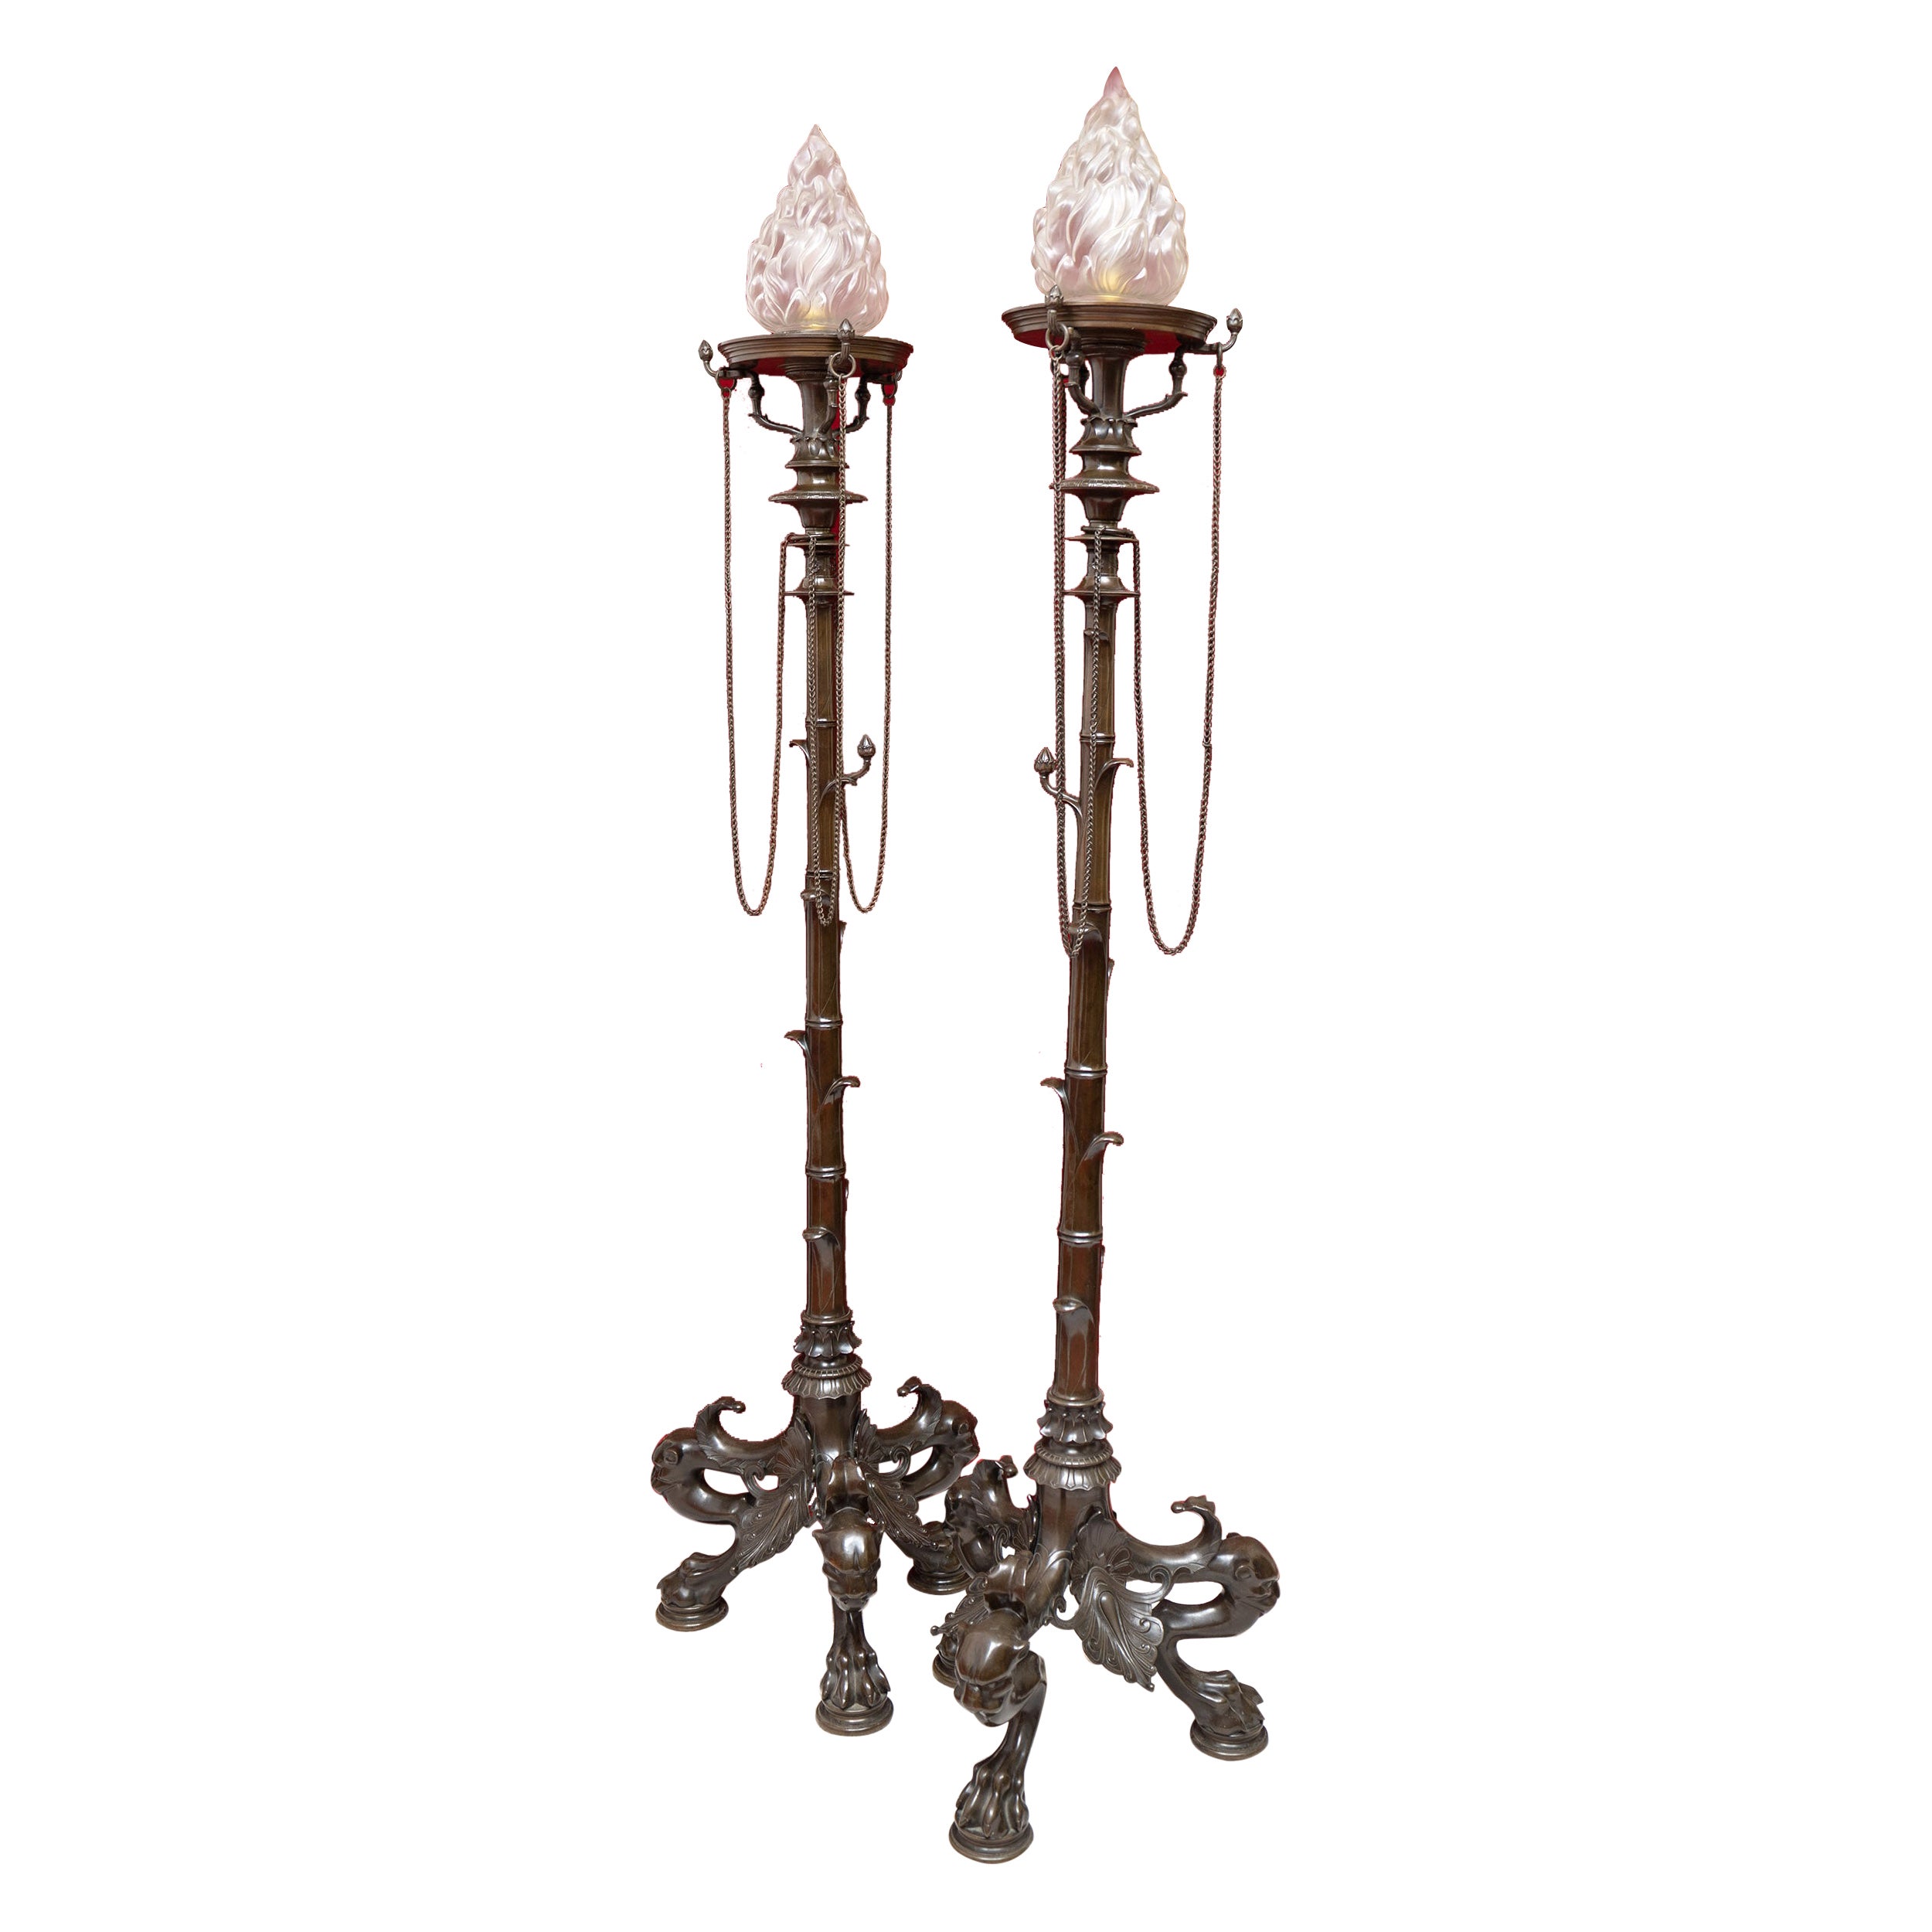 Une exquise paire de supports de lampes en bronze de l'exposition de Paris de 1855.